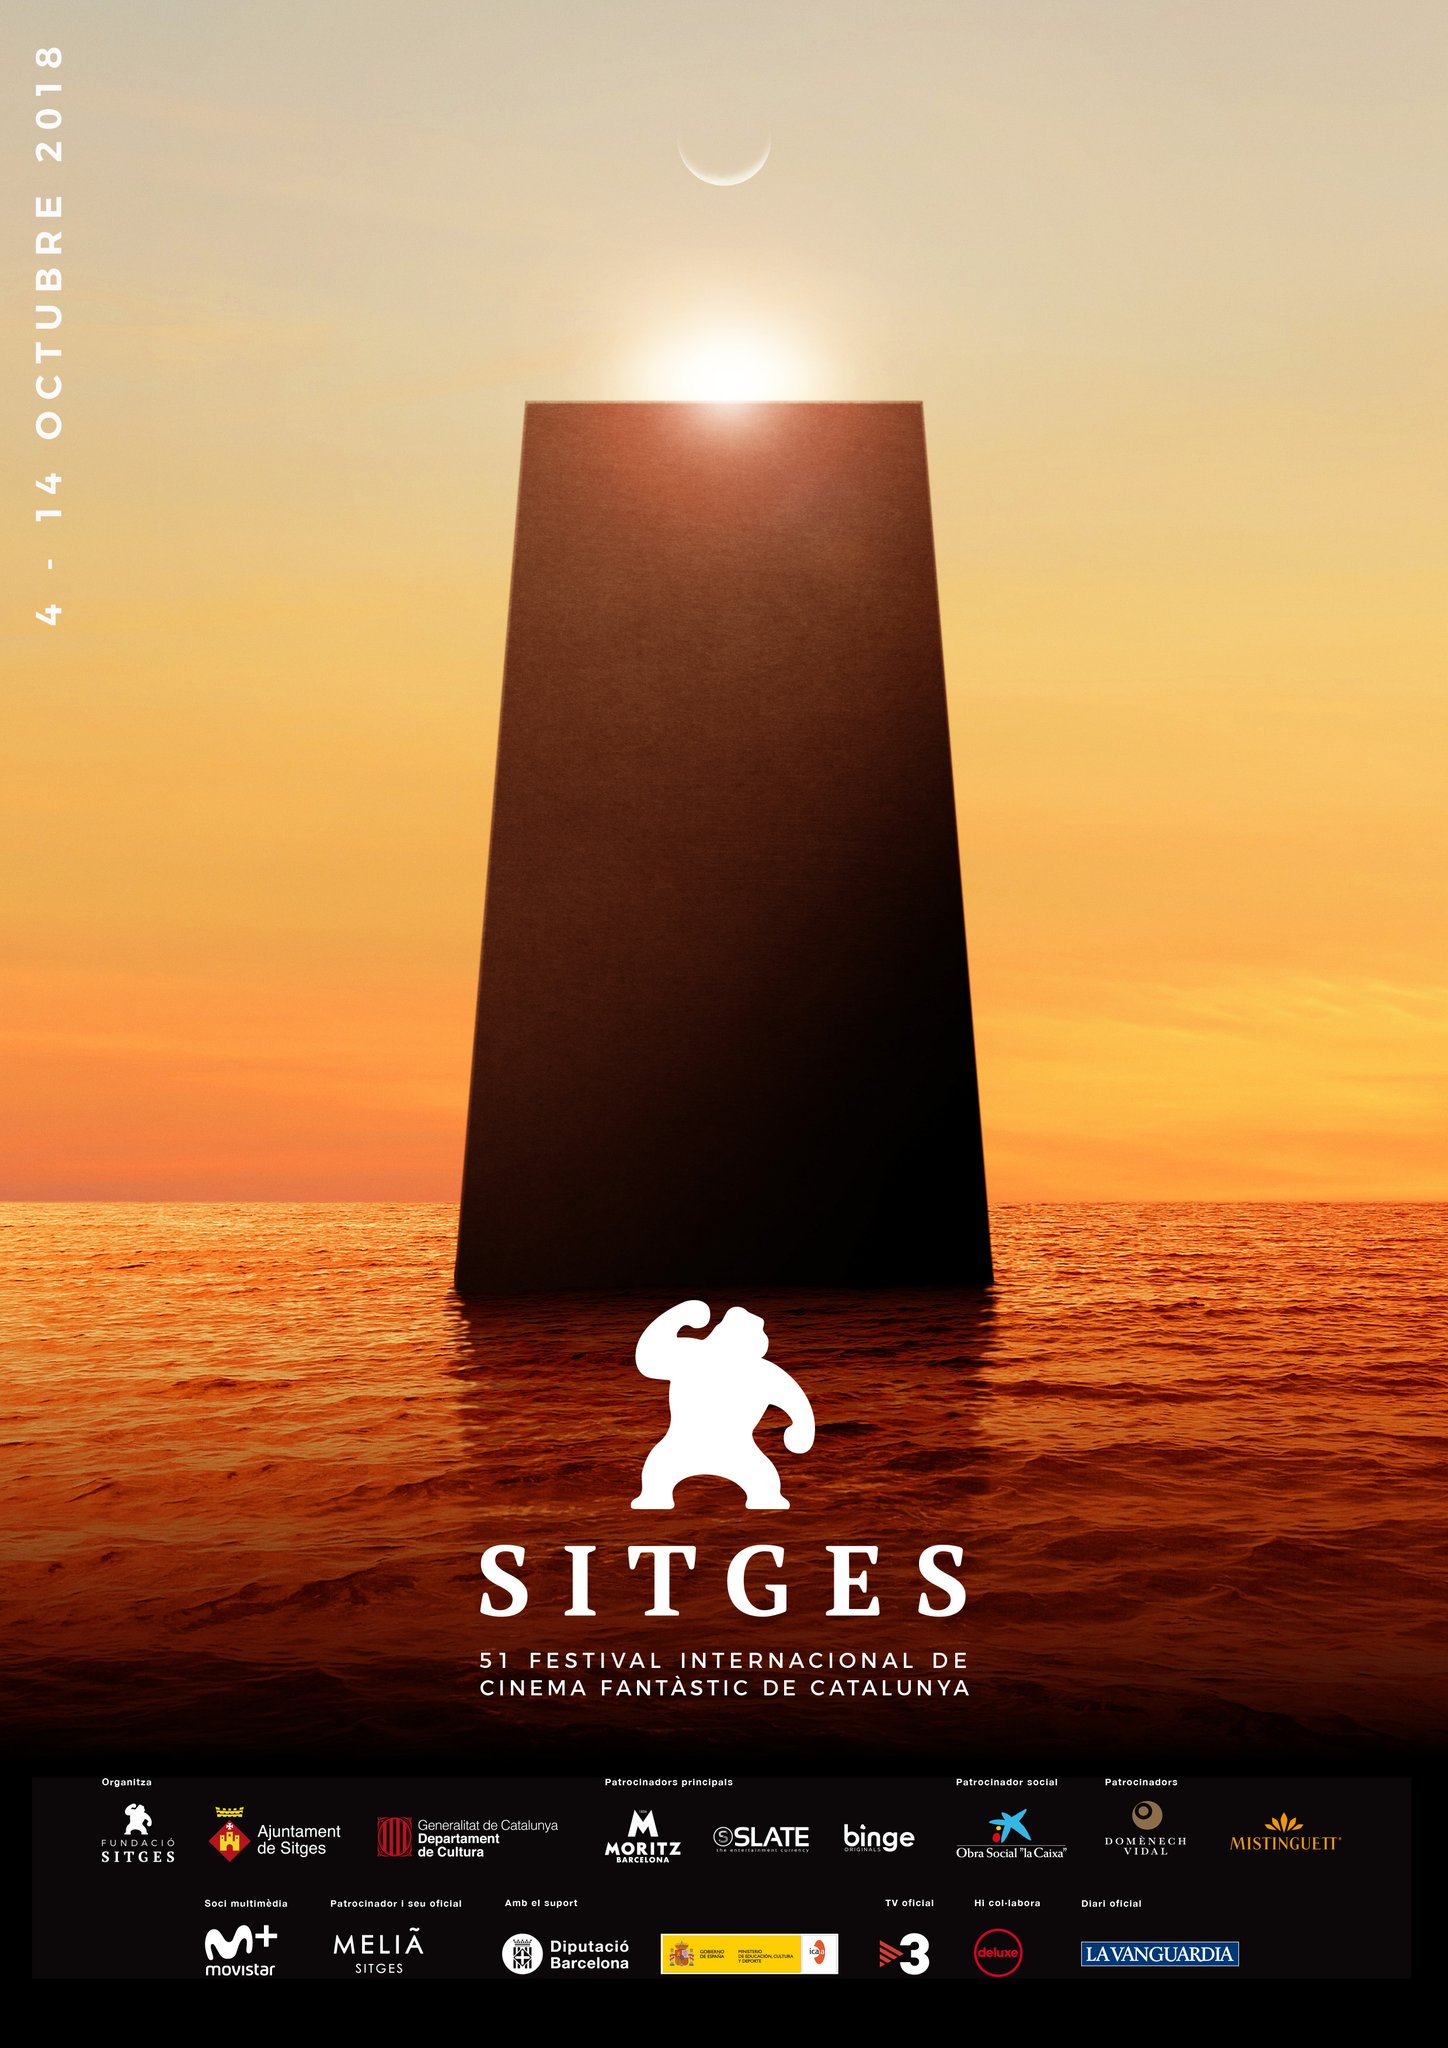 Primeras películas e invitados confirmados para Sitges 2018